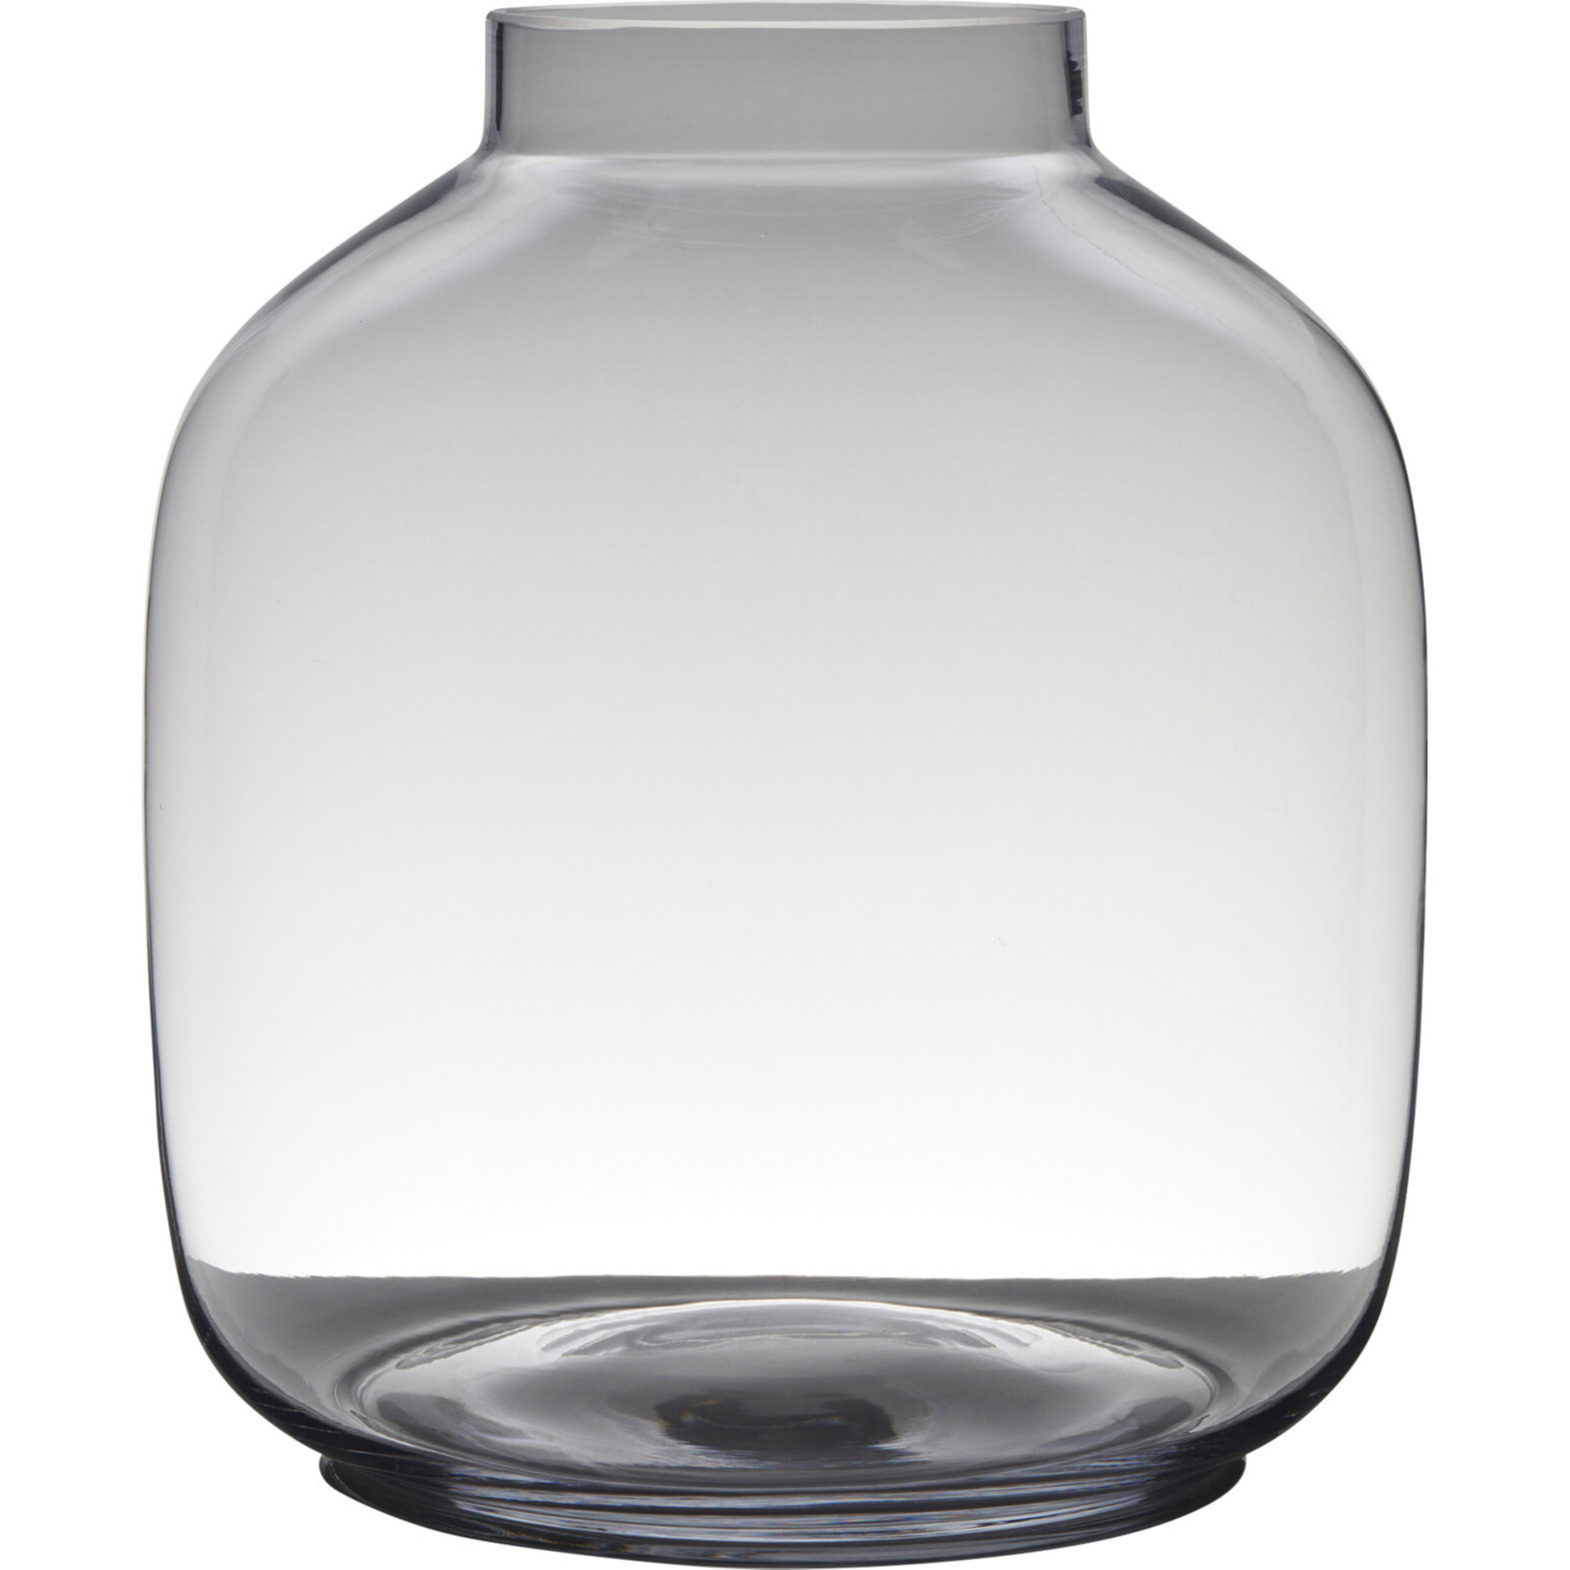 Transparante luxe grote vaas/vazen van glas 43 x 38 cm